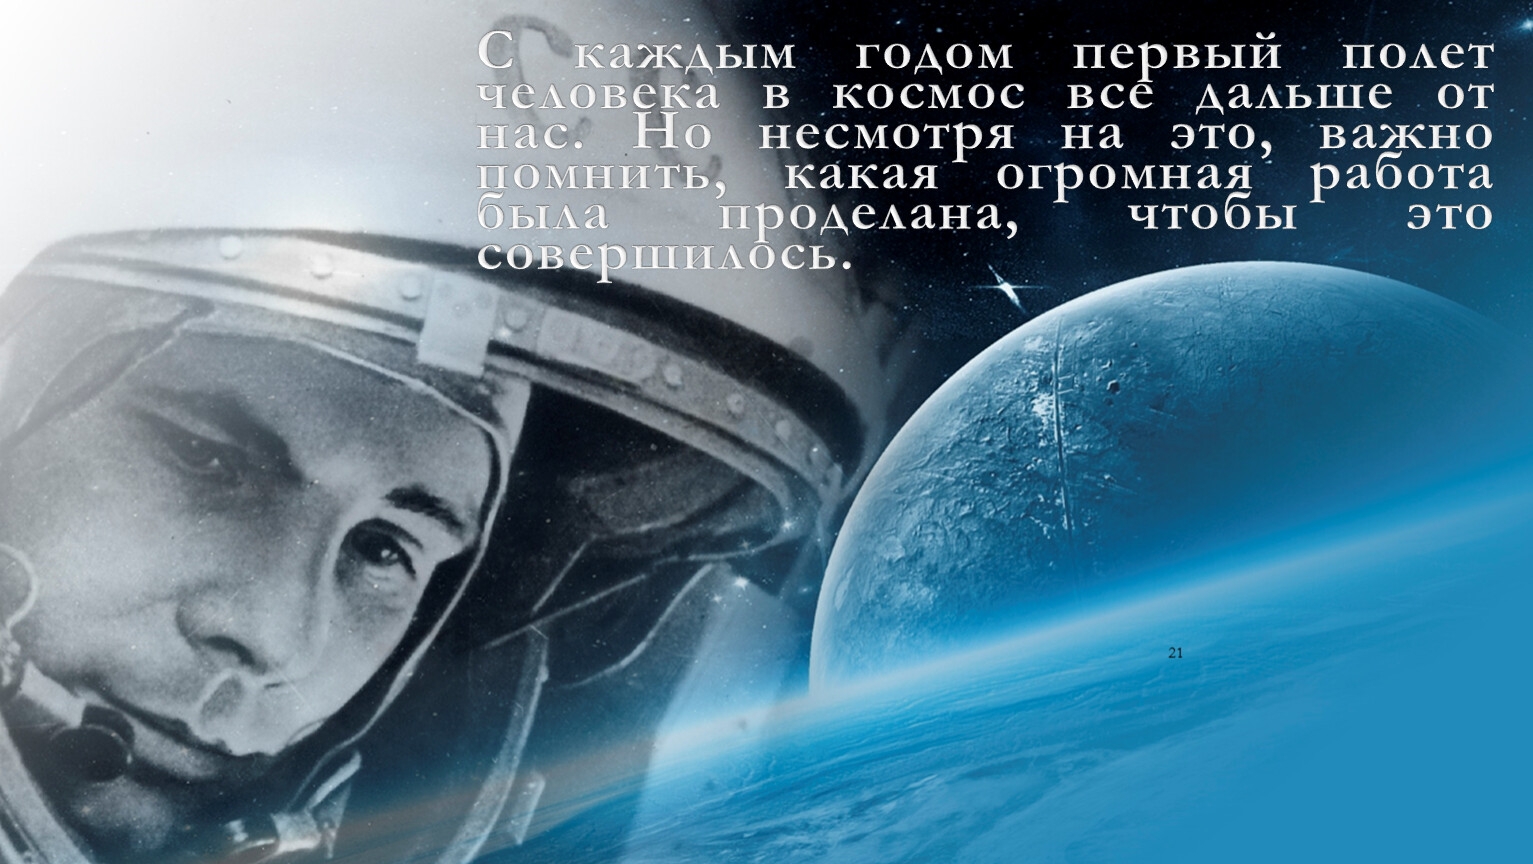 Презентация полет человека в космос. Гагаринский урок «первый полет человека в космос». 60 Летие полета Гагарина в космос.